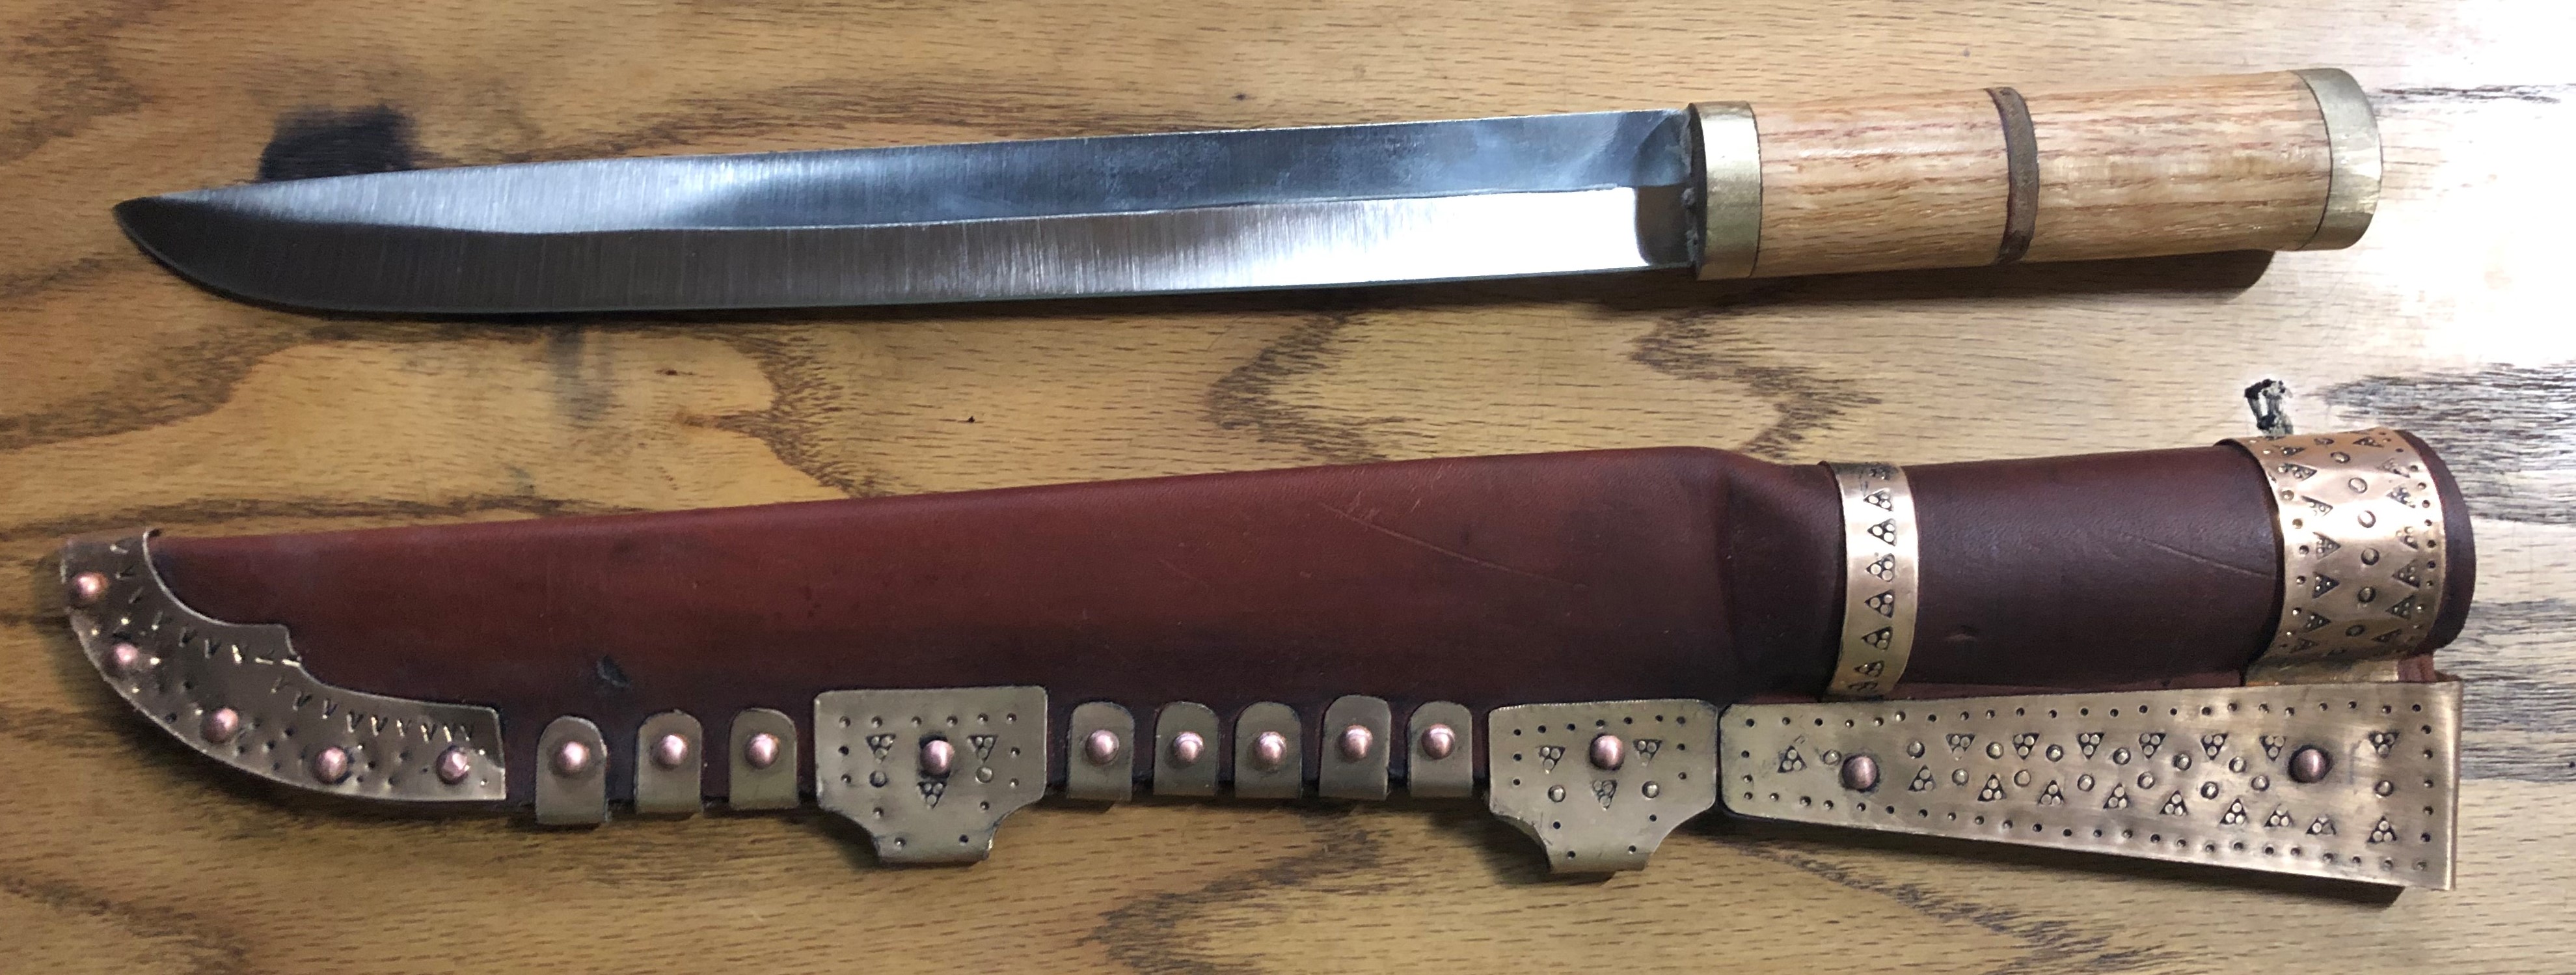 Gotland Knife Sheath